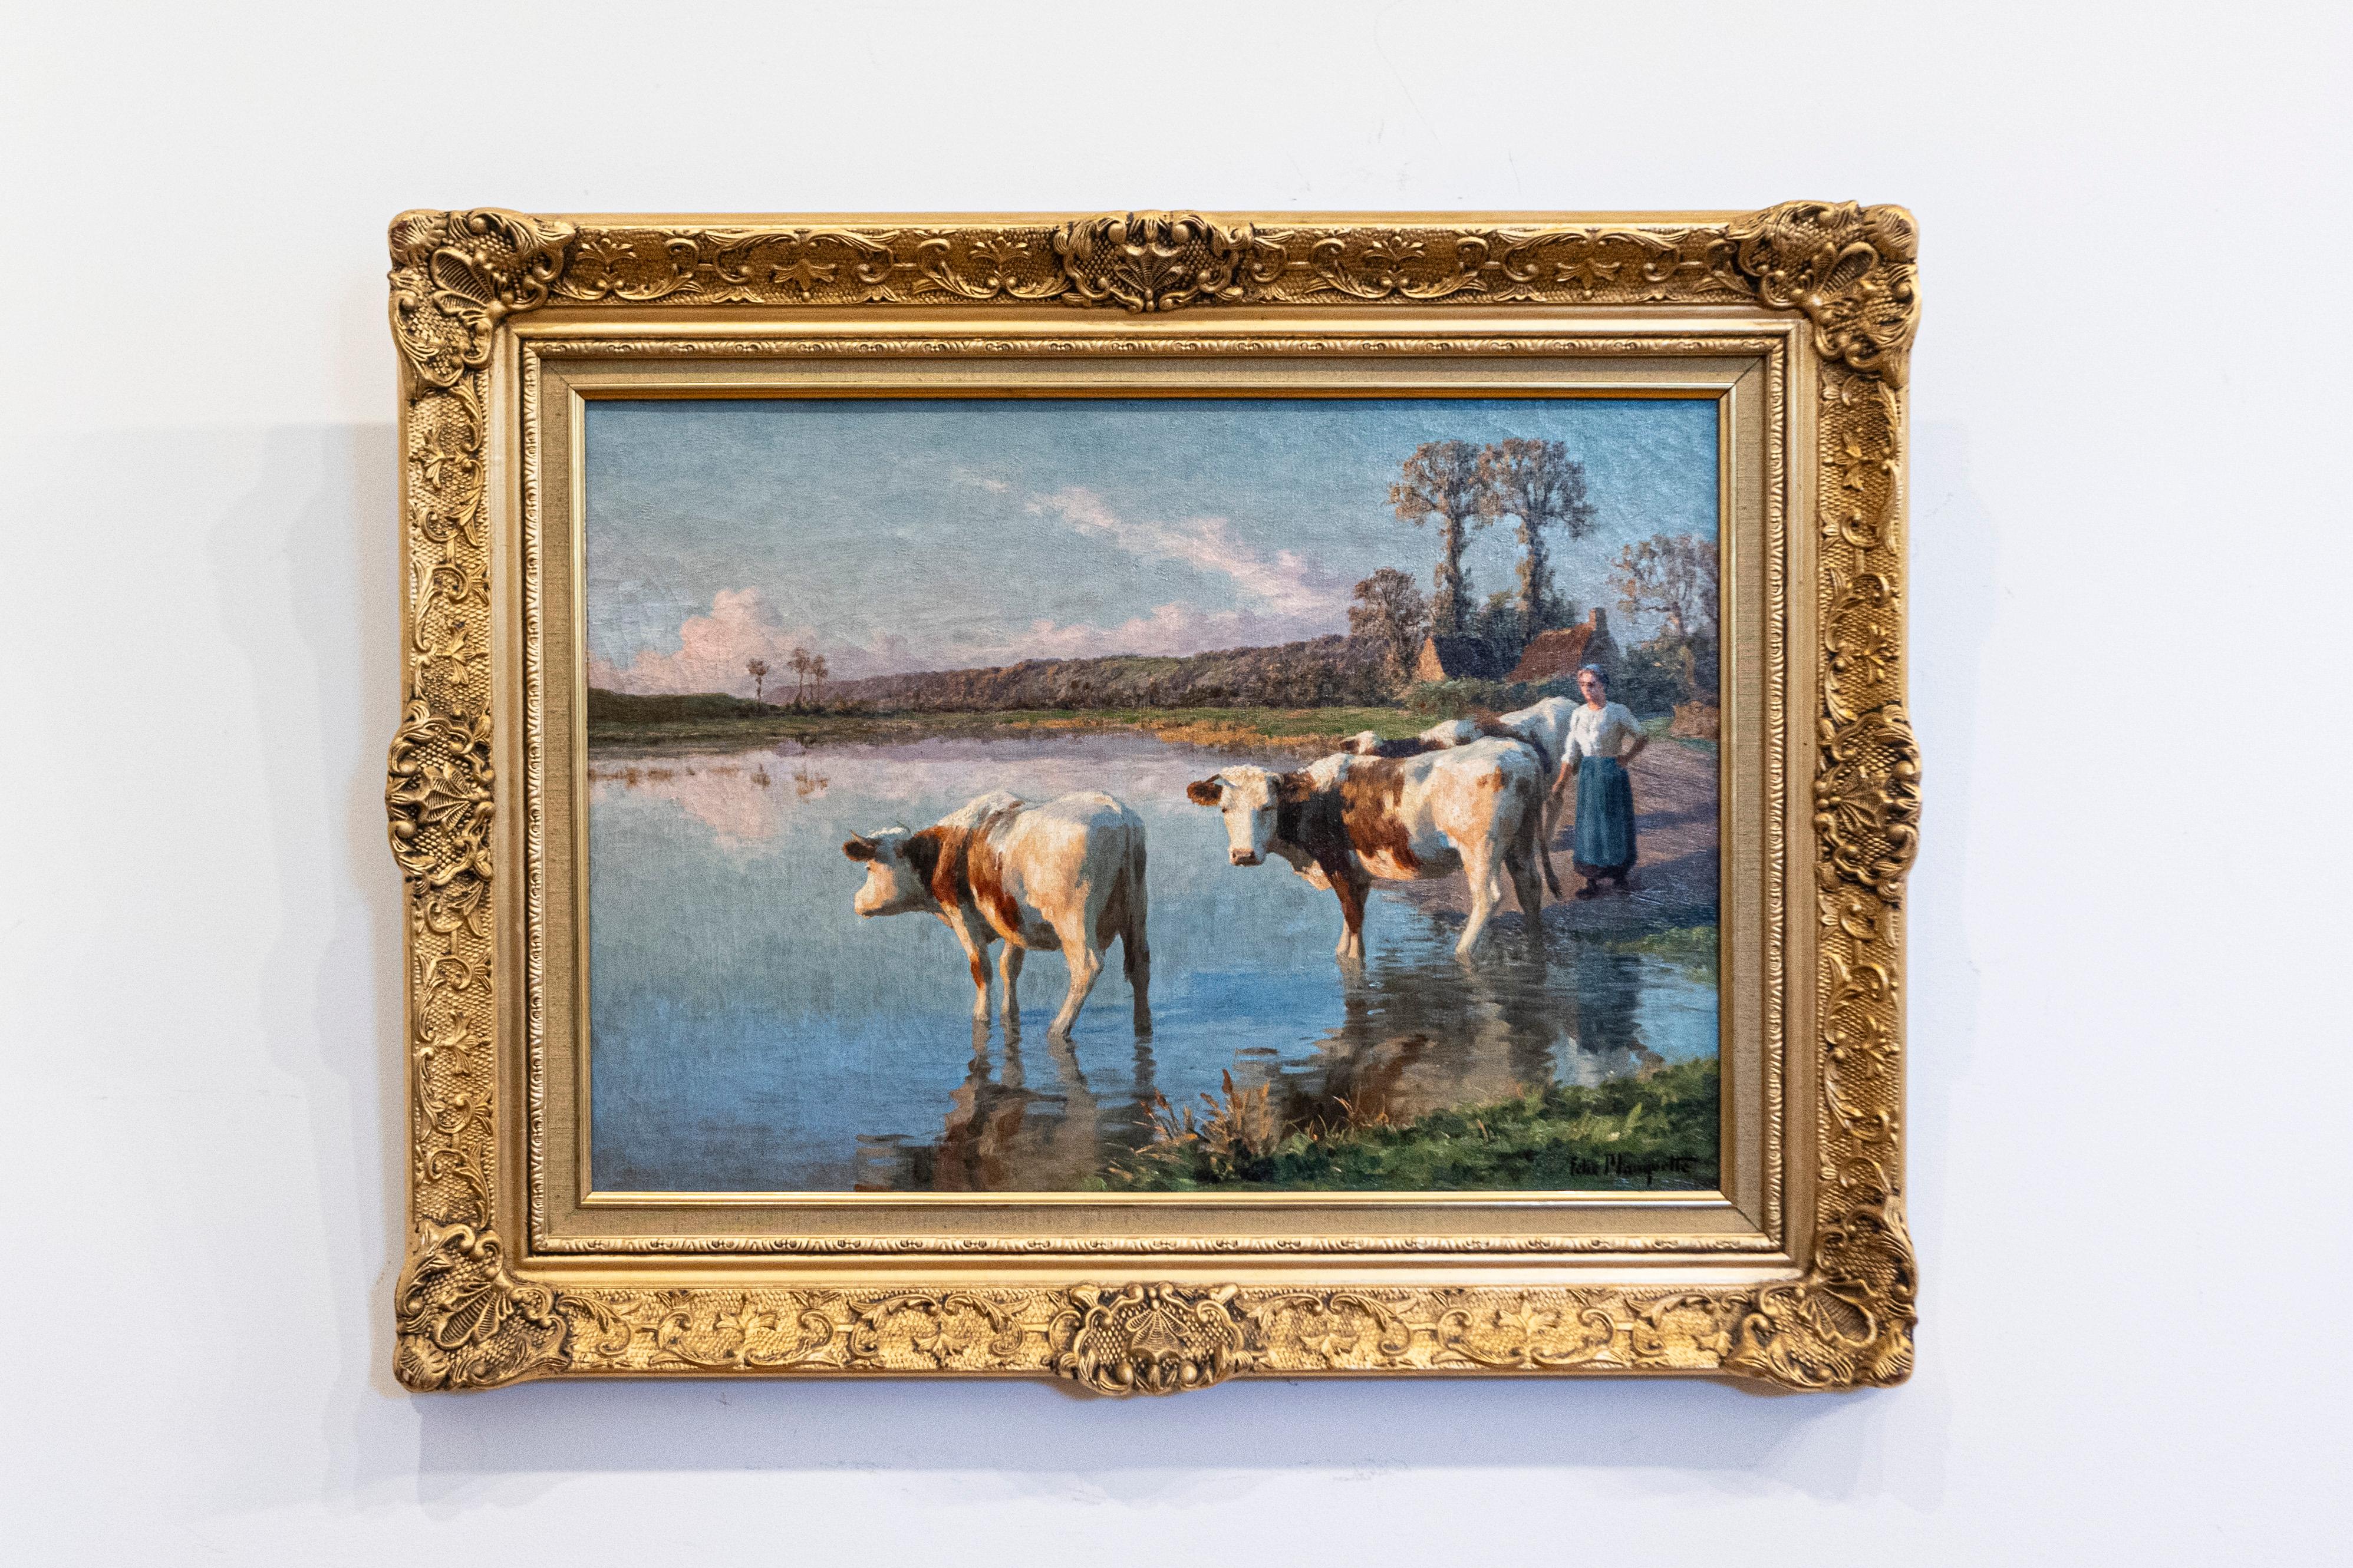 Peinture à l'huile pastorale française de la fin du XIXe siècle par Félix Planquette (1873-1964), représentant une paysanne avec ses vaches au bord d'une rivière, dans un cadre en bois doré. Cette exquise peinture française présente une scène